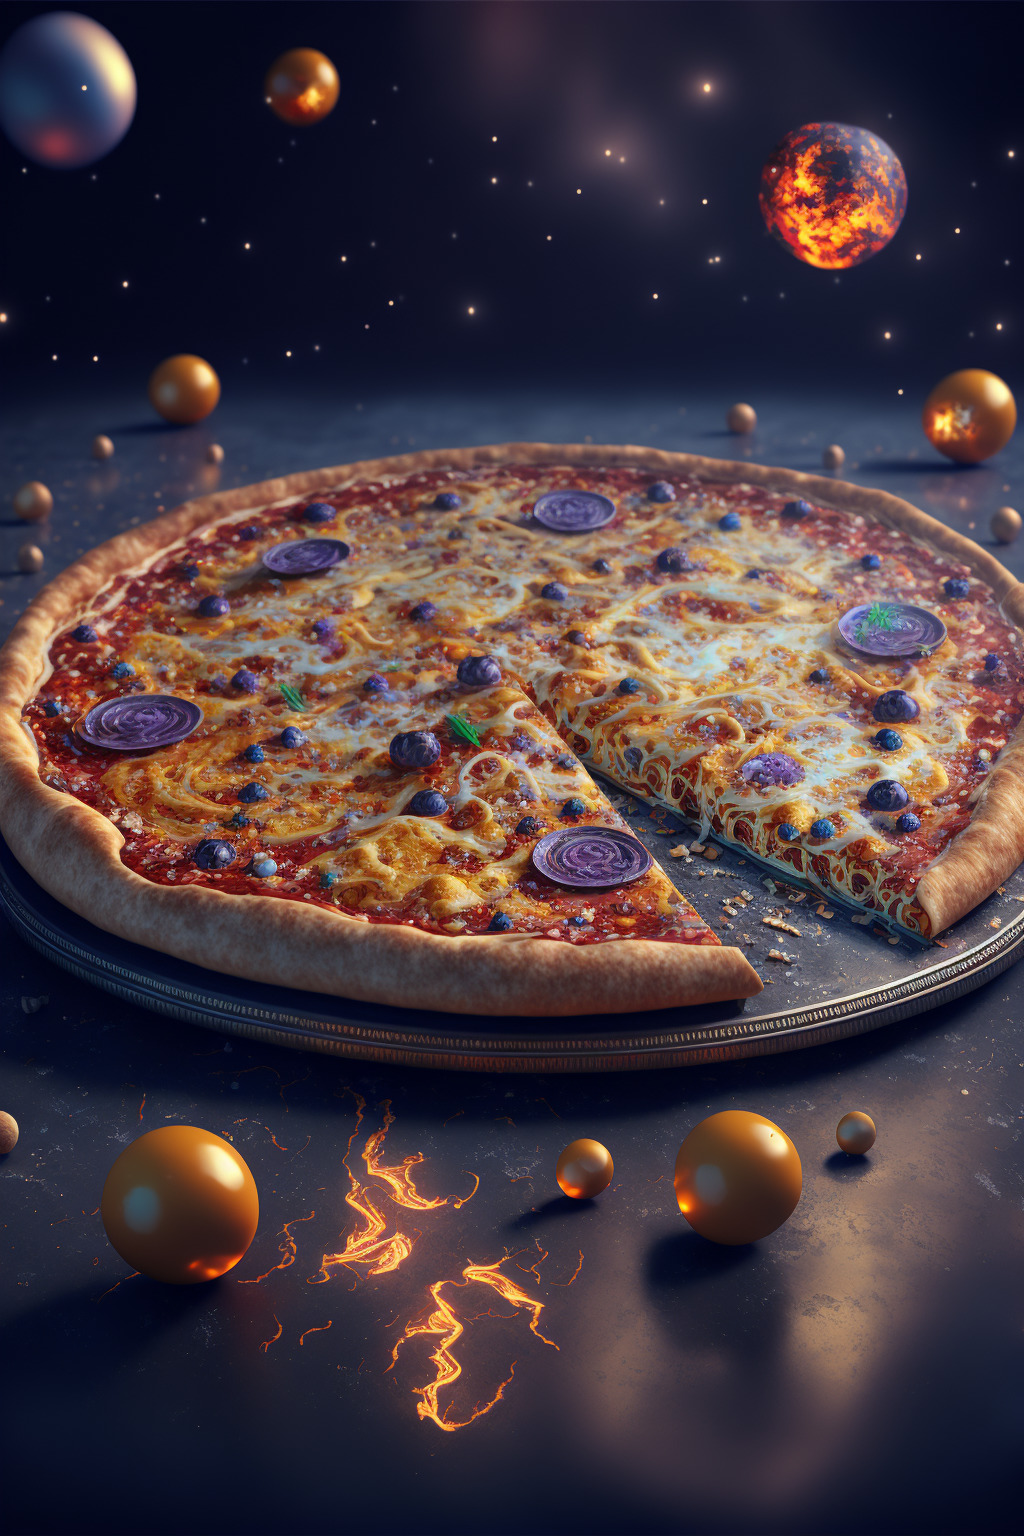 космическое питание сицилийская пицца фото 96